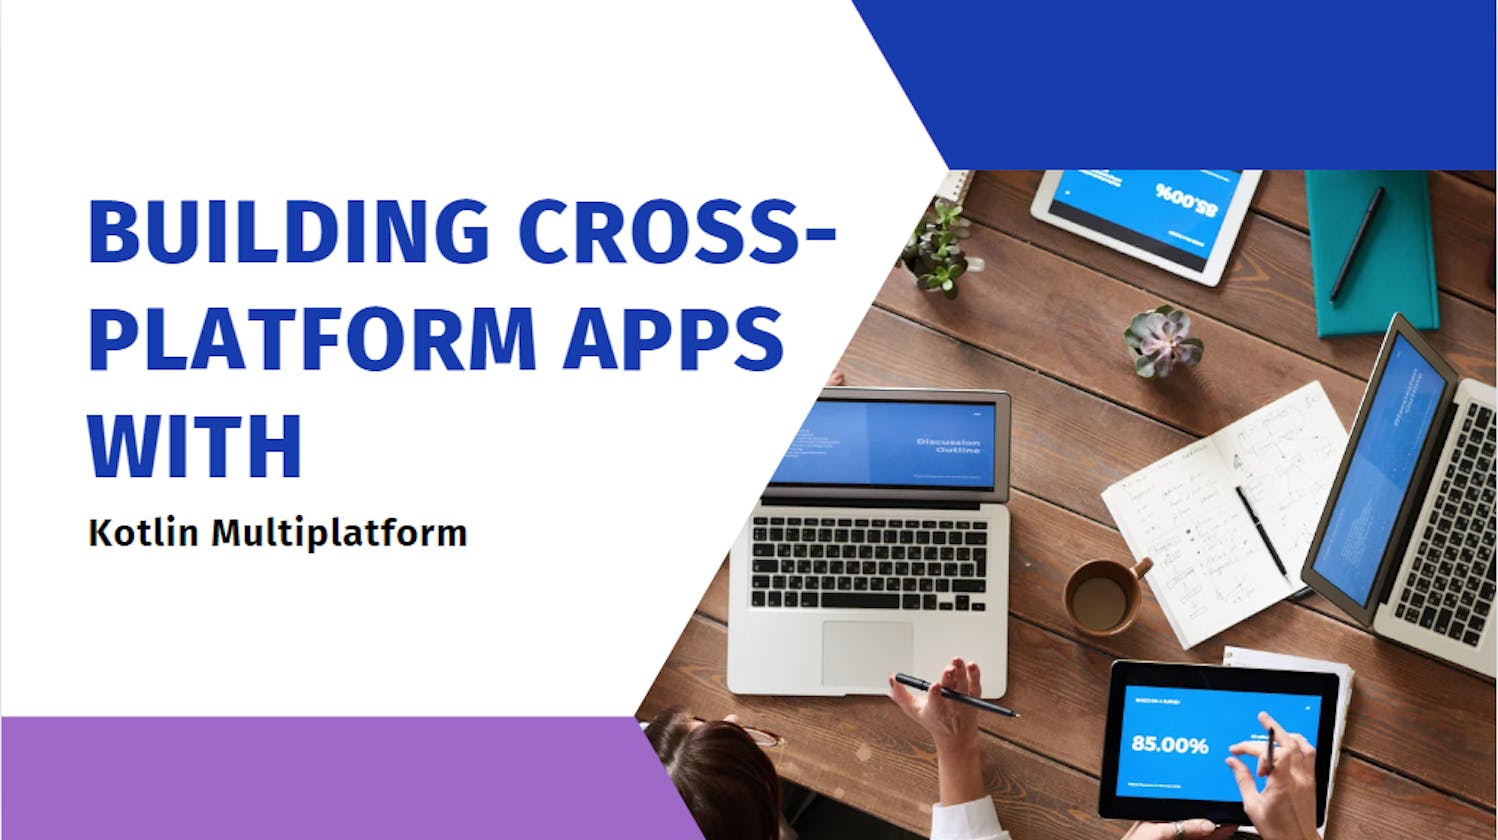 Building Cross-Platform Apps with Kotlin Multiplatform Mobile (KMM)